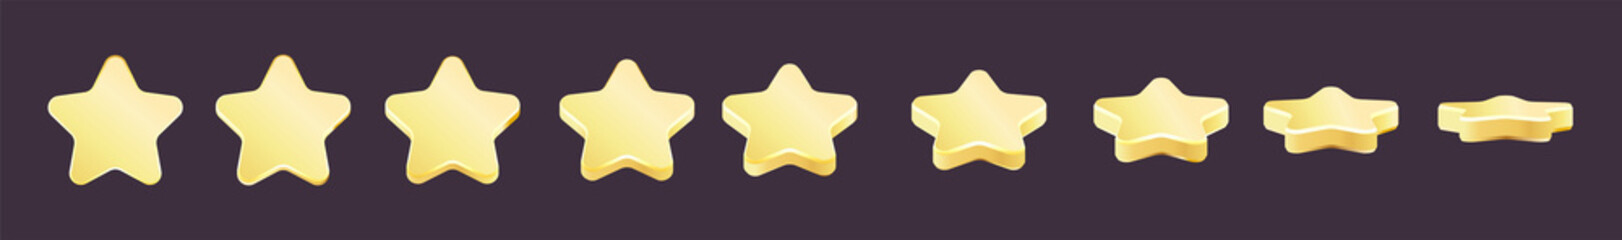 Golden award set. Set of rotating golden stars.